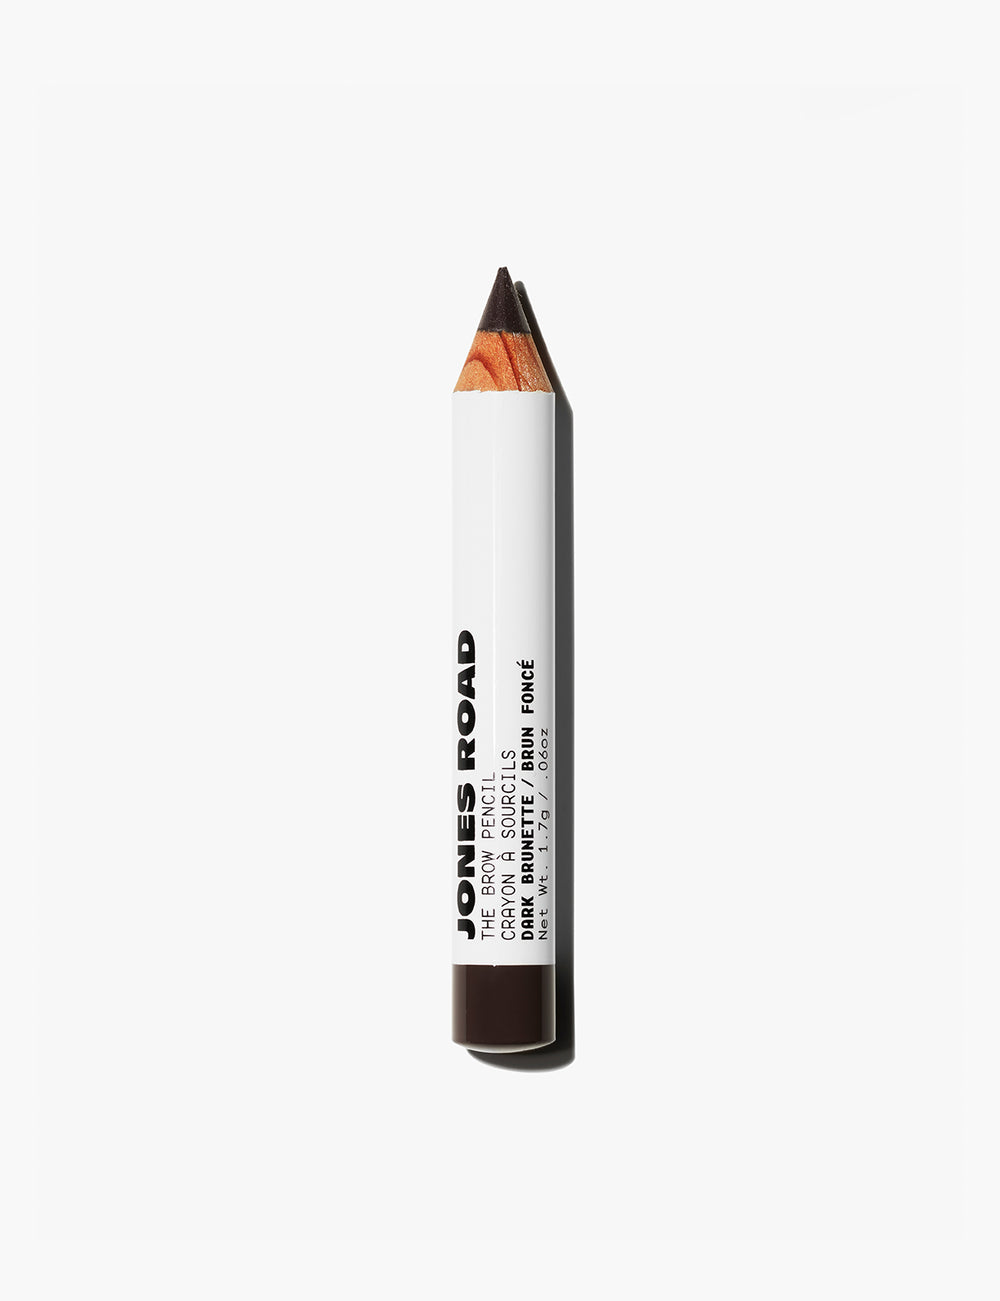 Jones Road clean eyebrow pencil in dark brunette